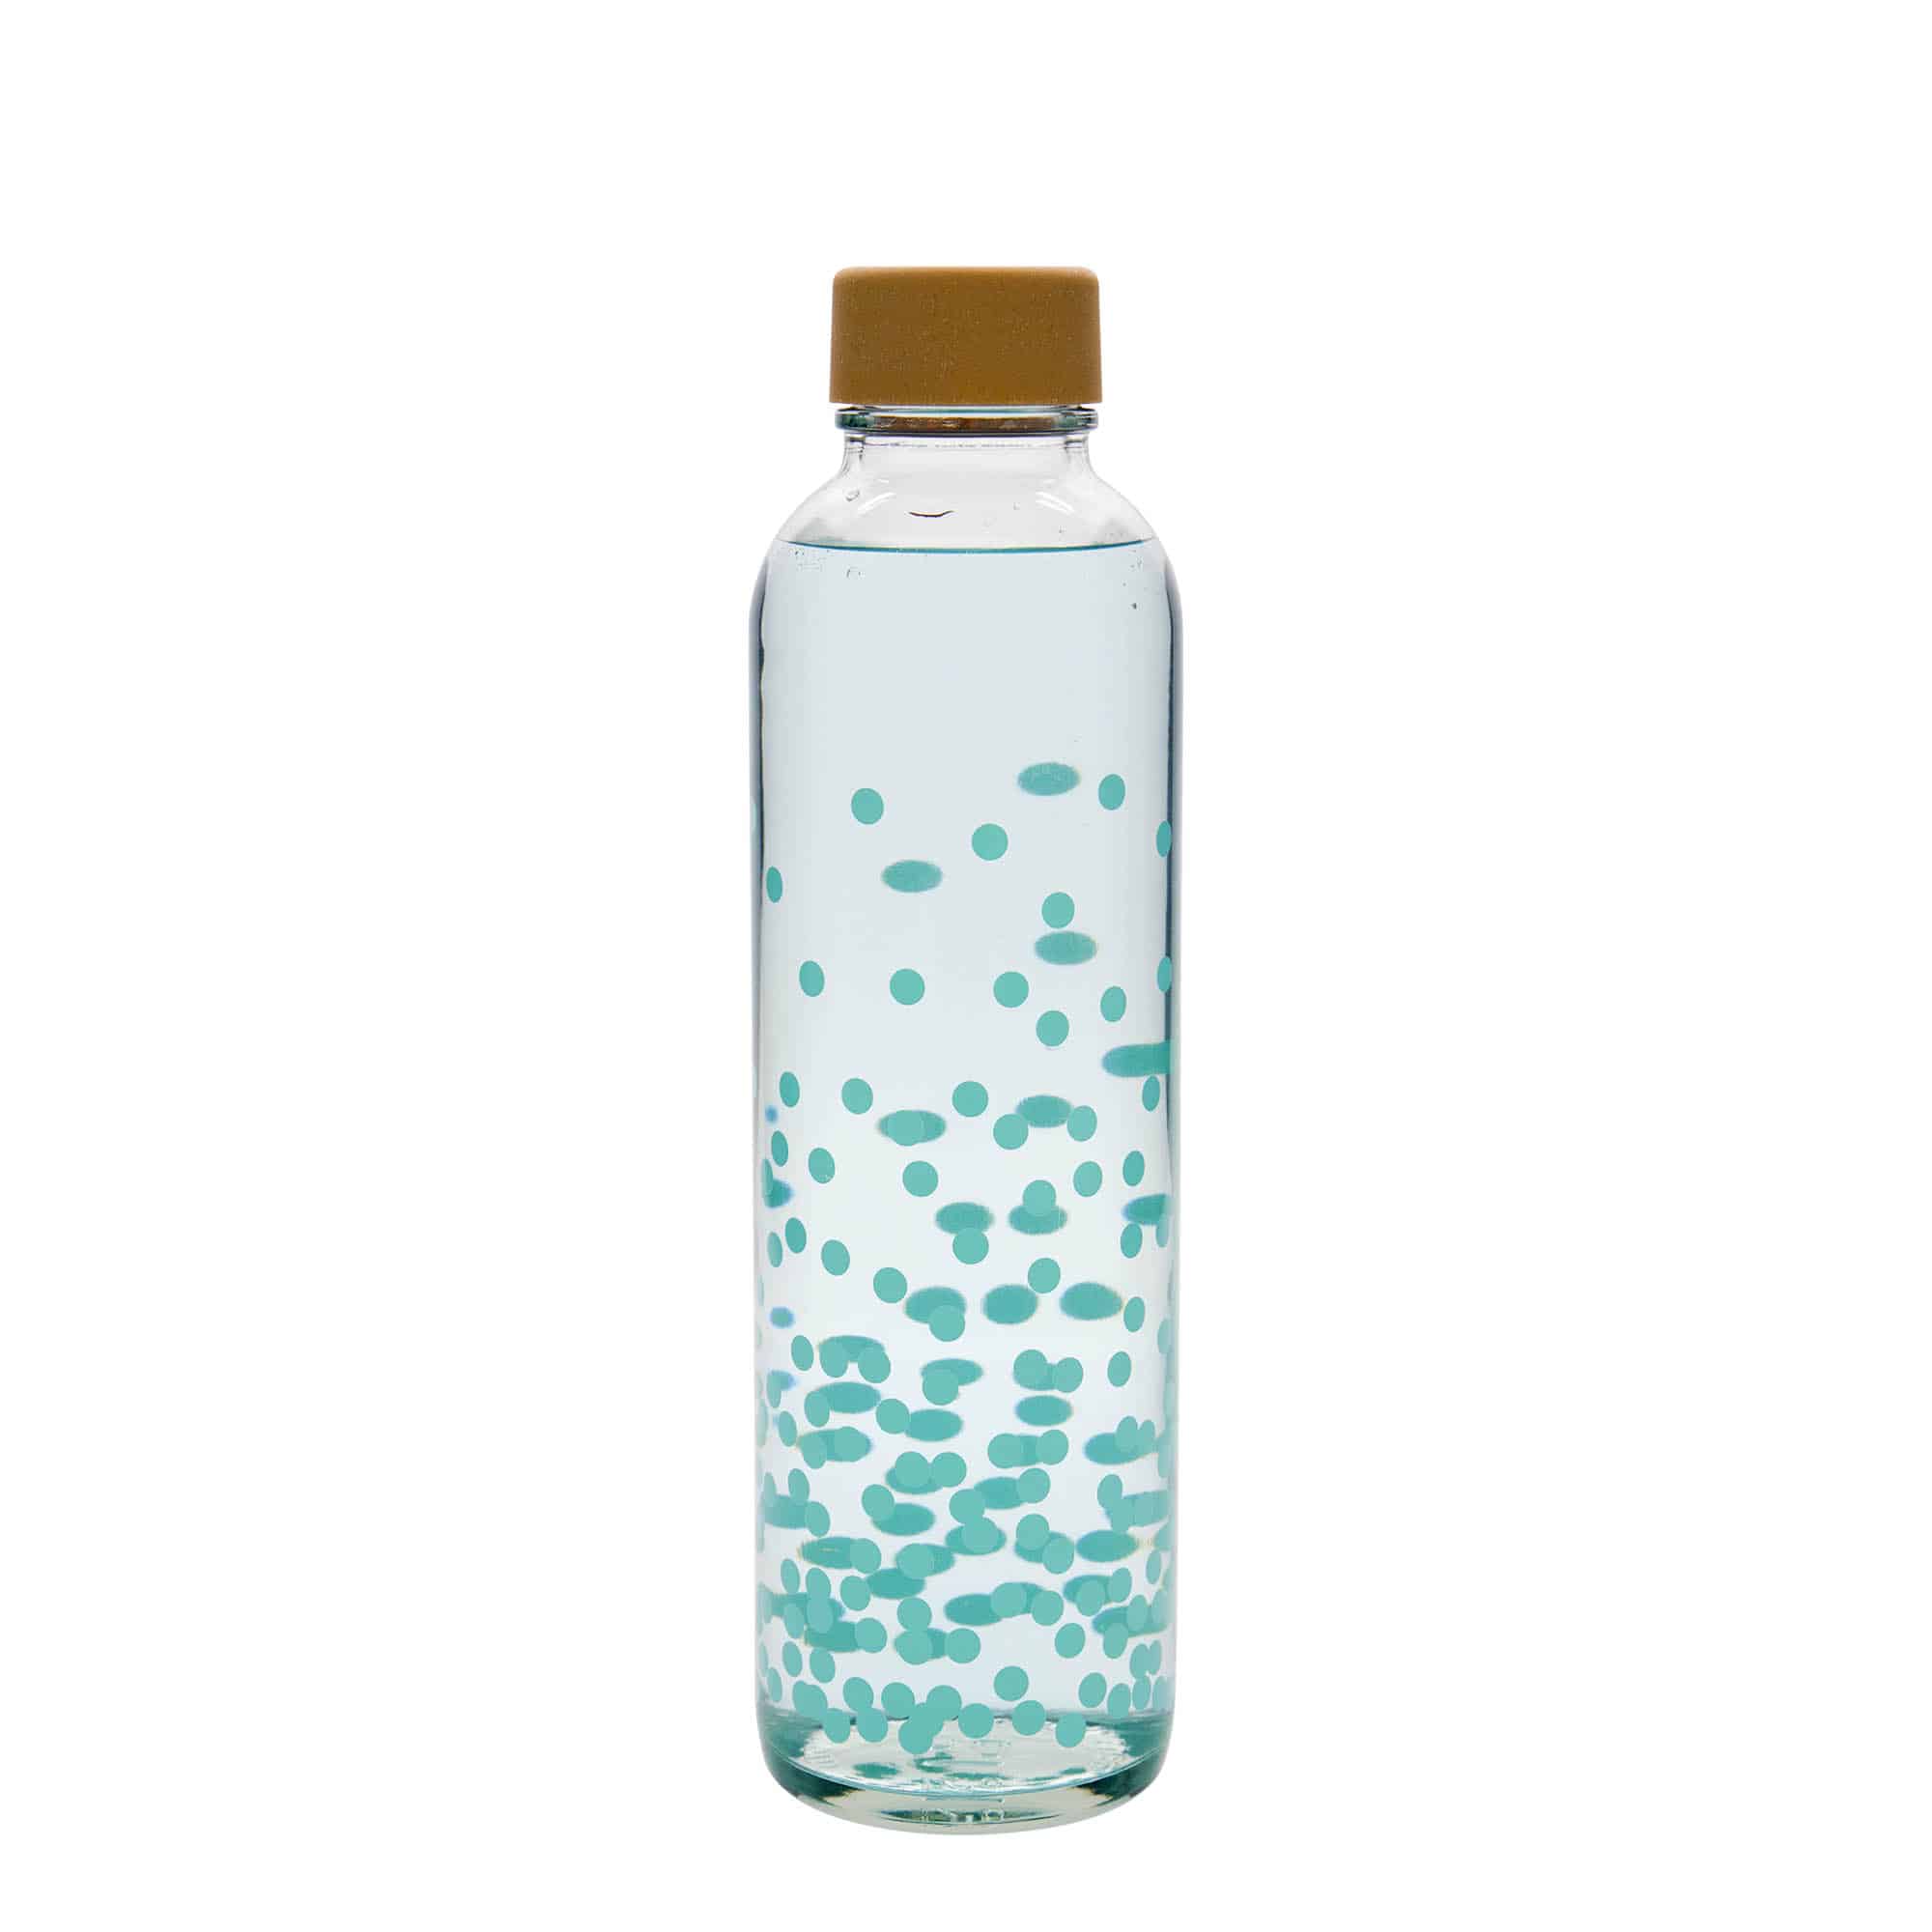 700 ml-es ivópalack CARRY Bottle, motívum: Pure Happiness, szájnyílás: csavaros kupak